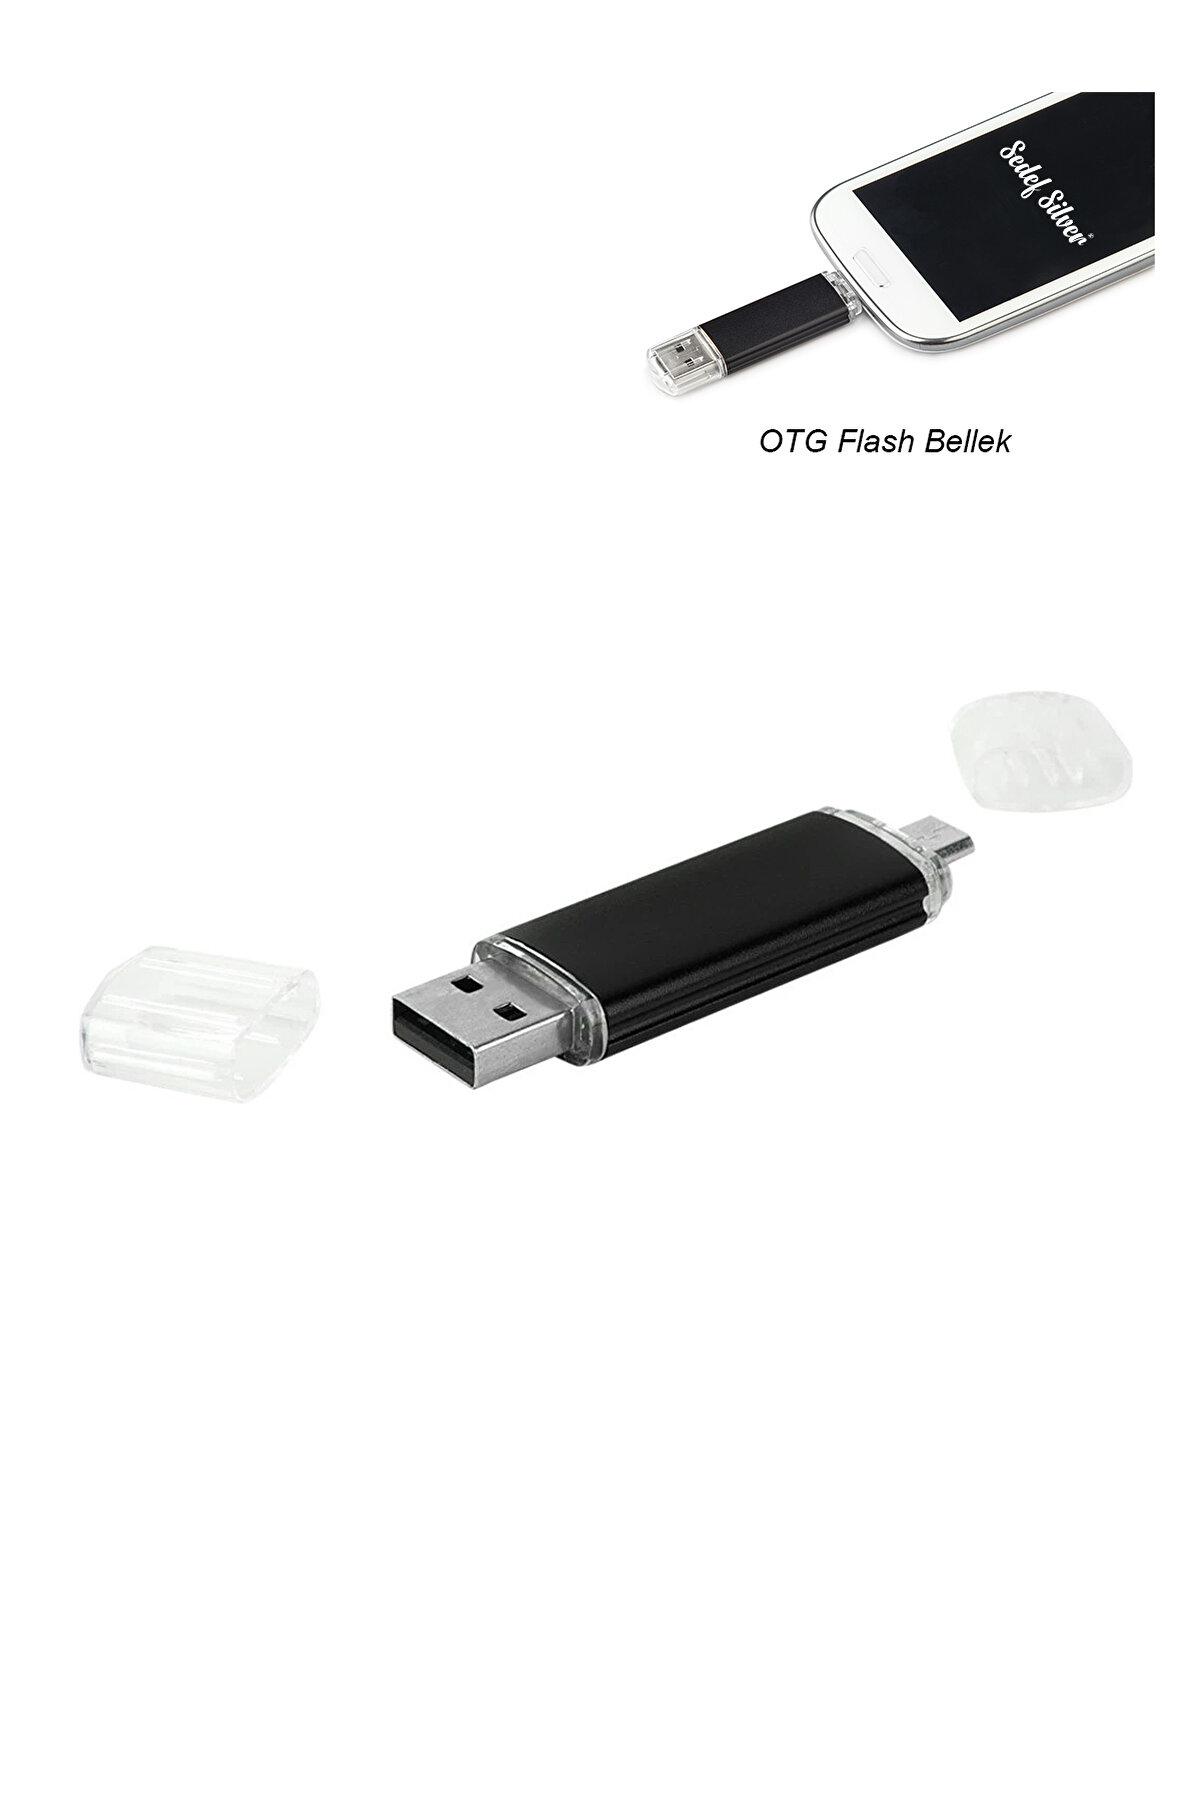 SEDEF SİLVER Otg Flash Bellek, Micro Usb Flash Bellek, Mini Usb Bellek 32 Gb